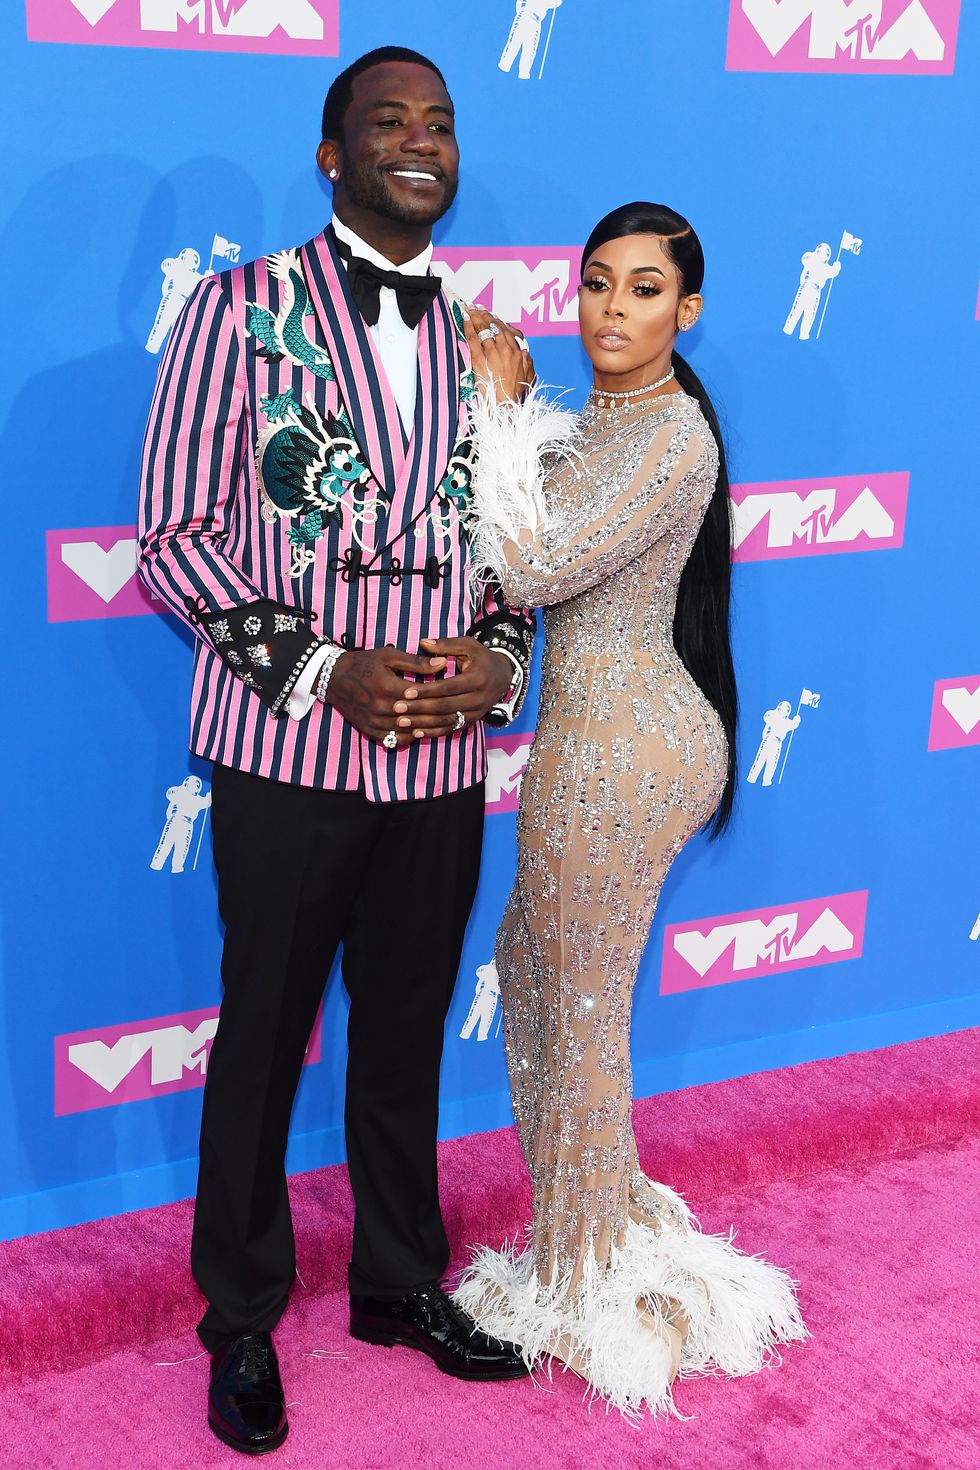 Chàng rapper Gucci Mane lựa chọn chiếc áo khoác hồng kẻ sọc điểm thêm chút họa tiết sinh động. Ảnh: ELLE USA